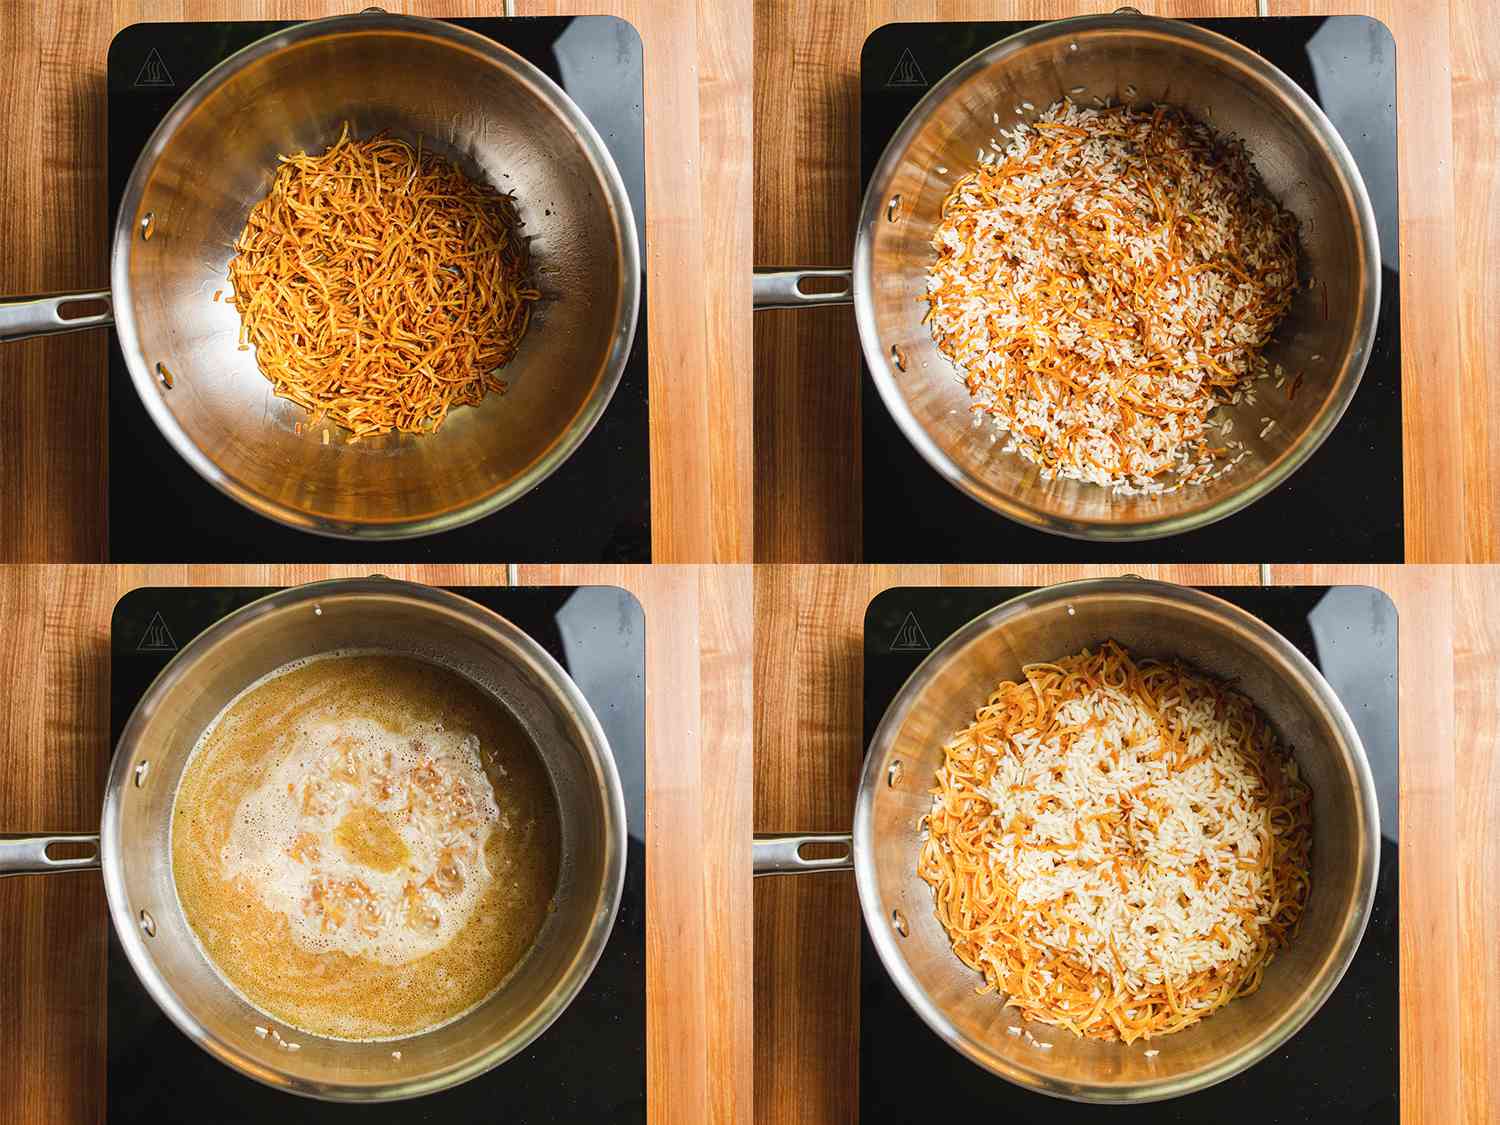 四幅图像拼贴。从左上起顺时针方向:平底锅里烤好的意大利面;米饭加入锅中;锅中加入肉汤;吸收水分的米饭和意大利面。